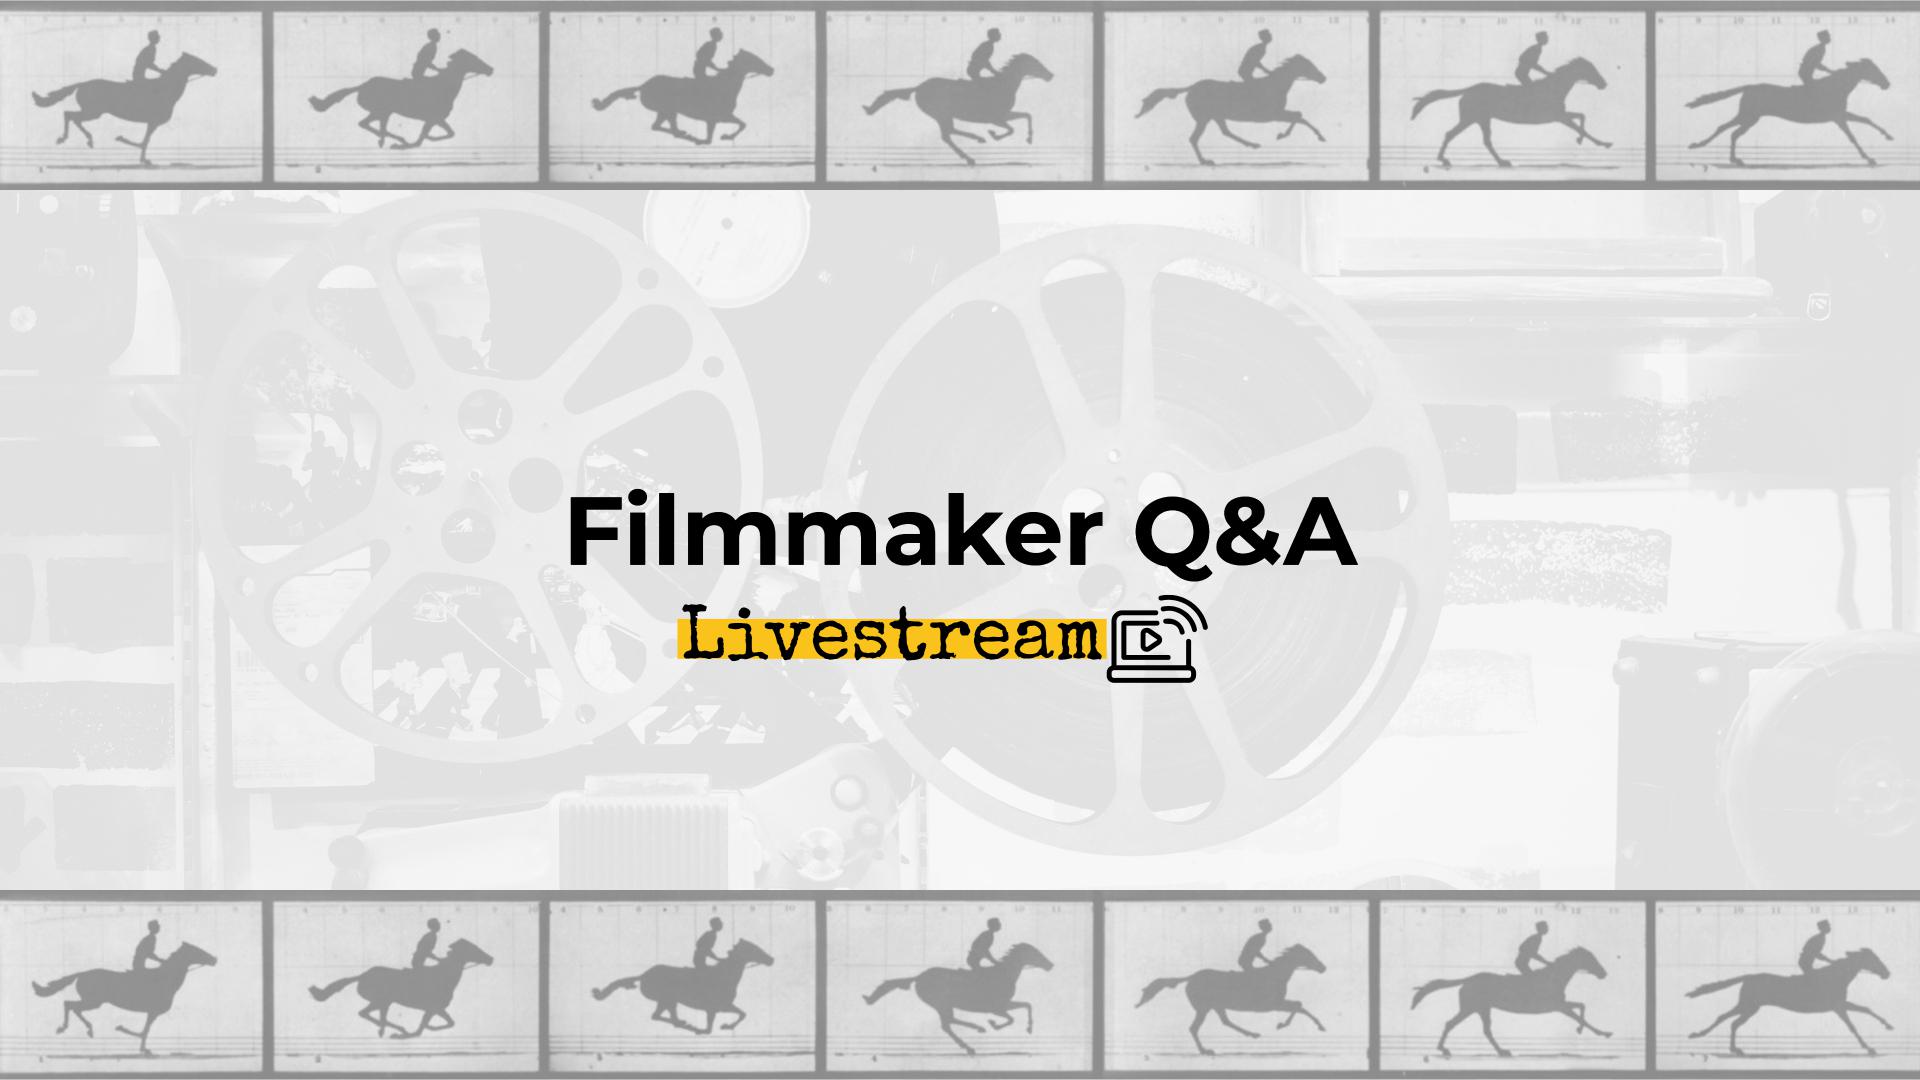 Filmmaker Q&A 1